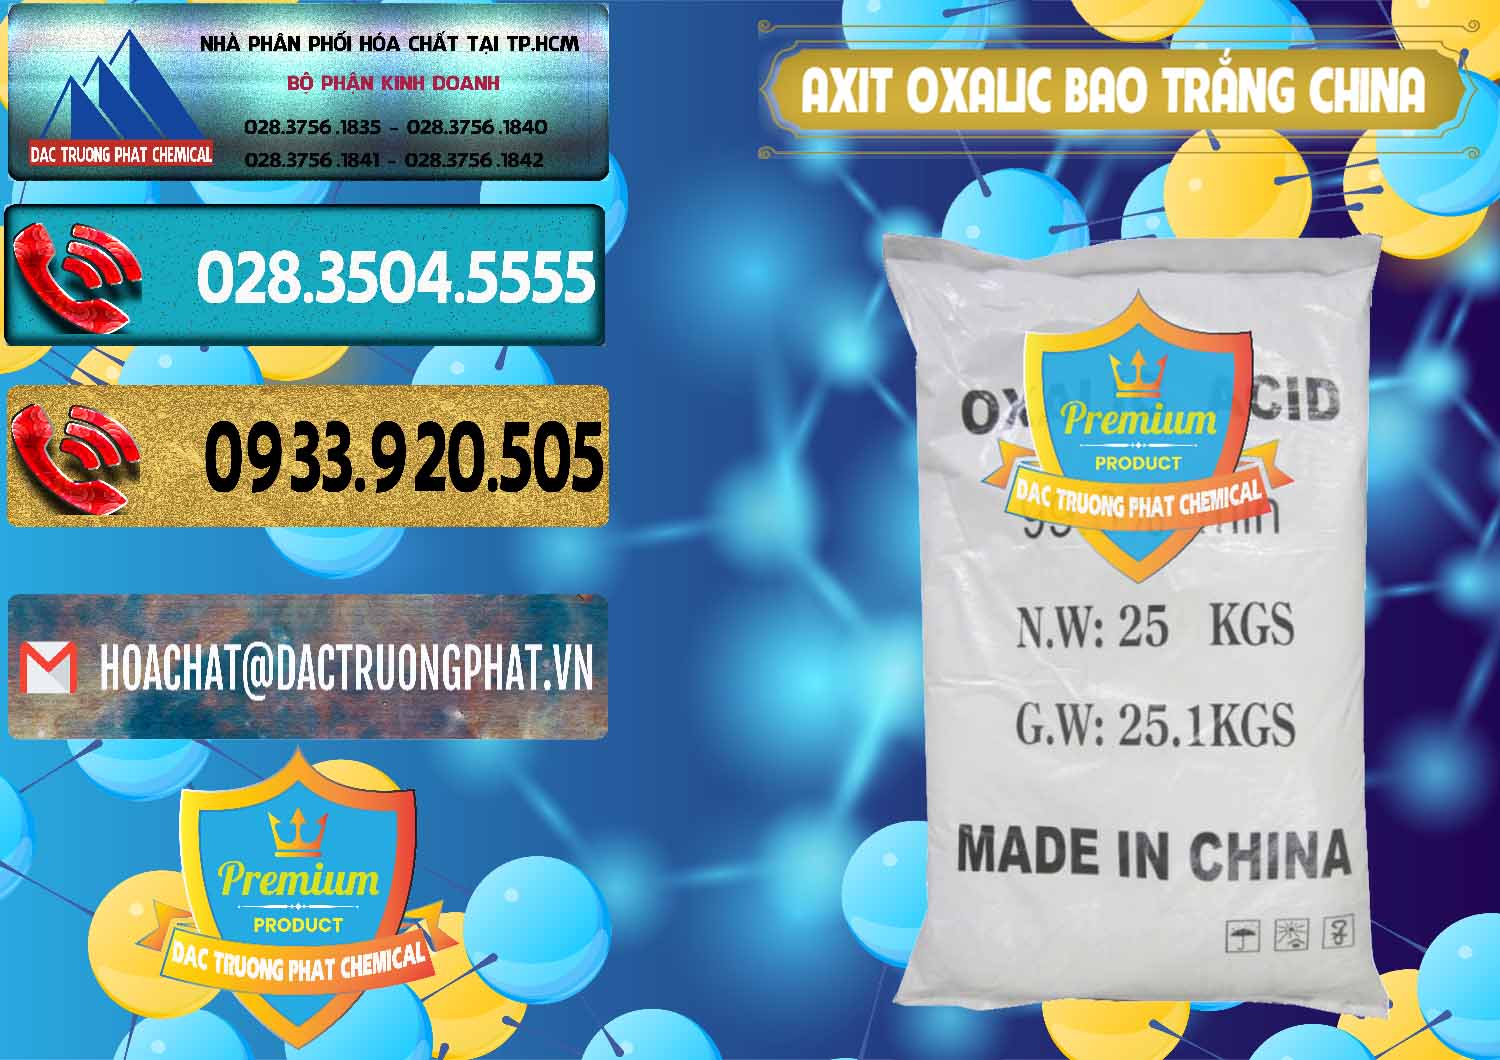 Nơi bán và cung ứng Acid Oxalic – Axit Oxalic 99.6% Bao Trắng Trung Quốc China - 0270 - Cty chuyên kinh doanh và phân phối hóa chất tại TP.HCM - hoachatdetnhuom.com